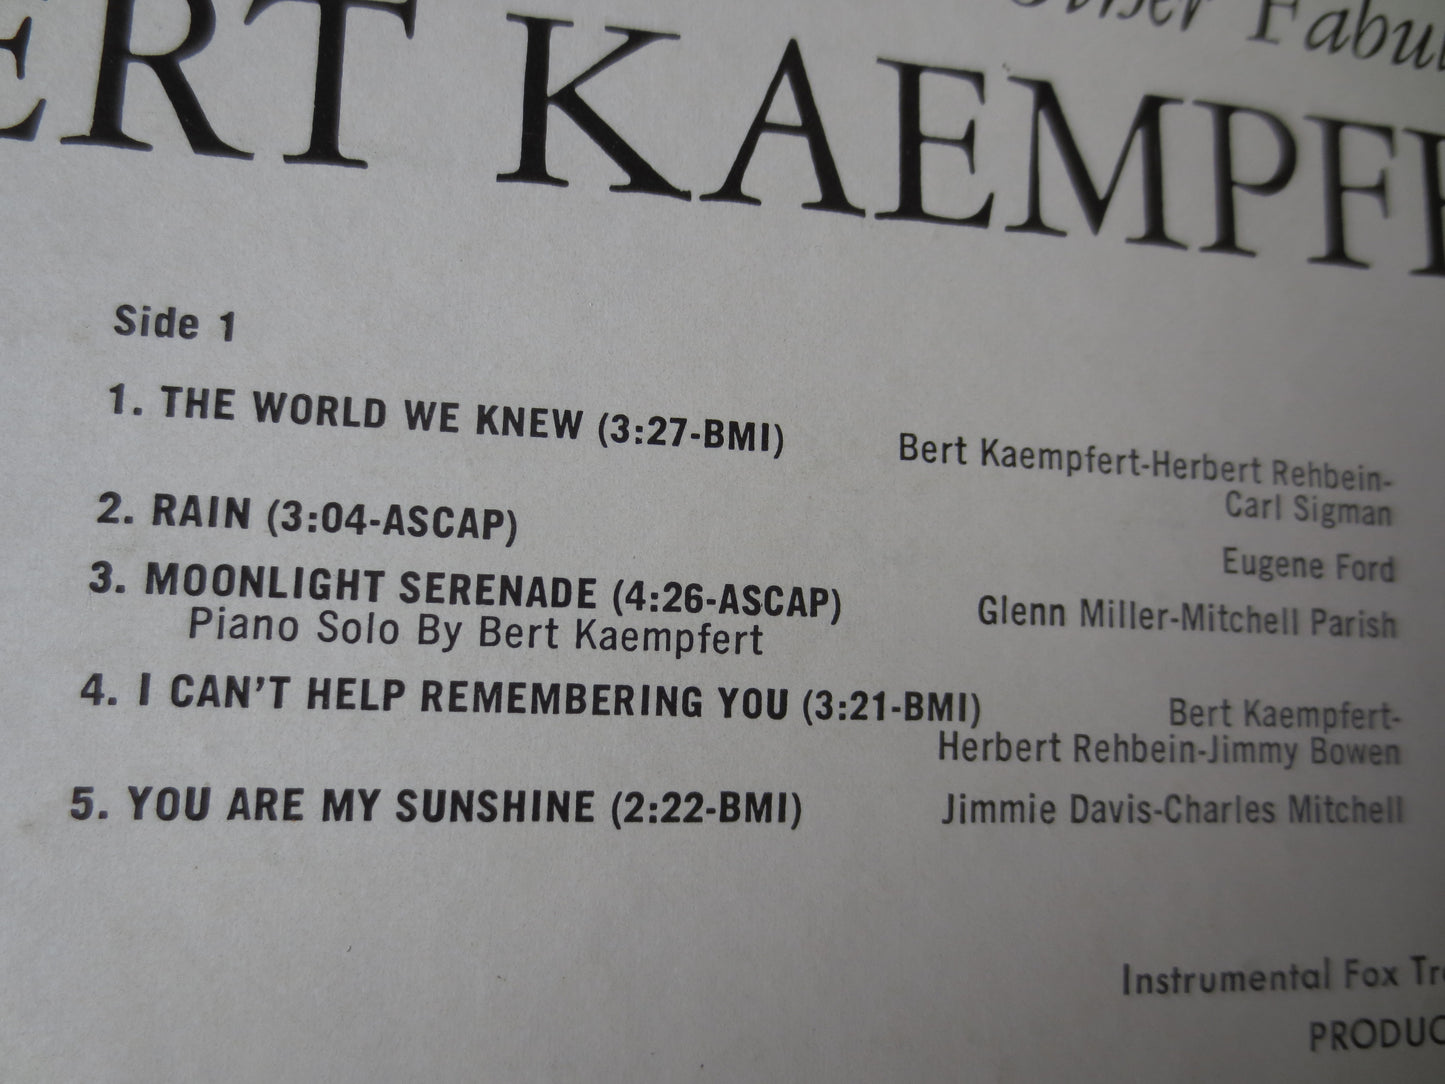 BERT KAEMPFERT, The WORLD We Knew, Bert Kaempfert Album, Jazz Records, Jazz Albums, Bert Kaempfert Music, lps, 1967 Records